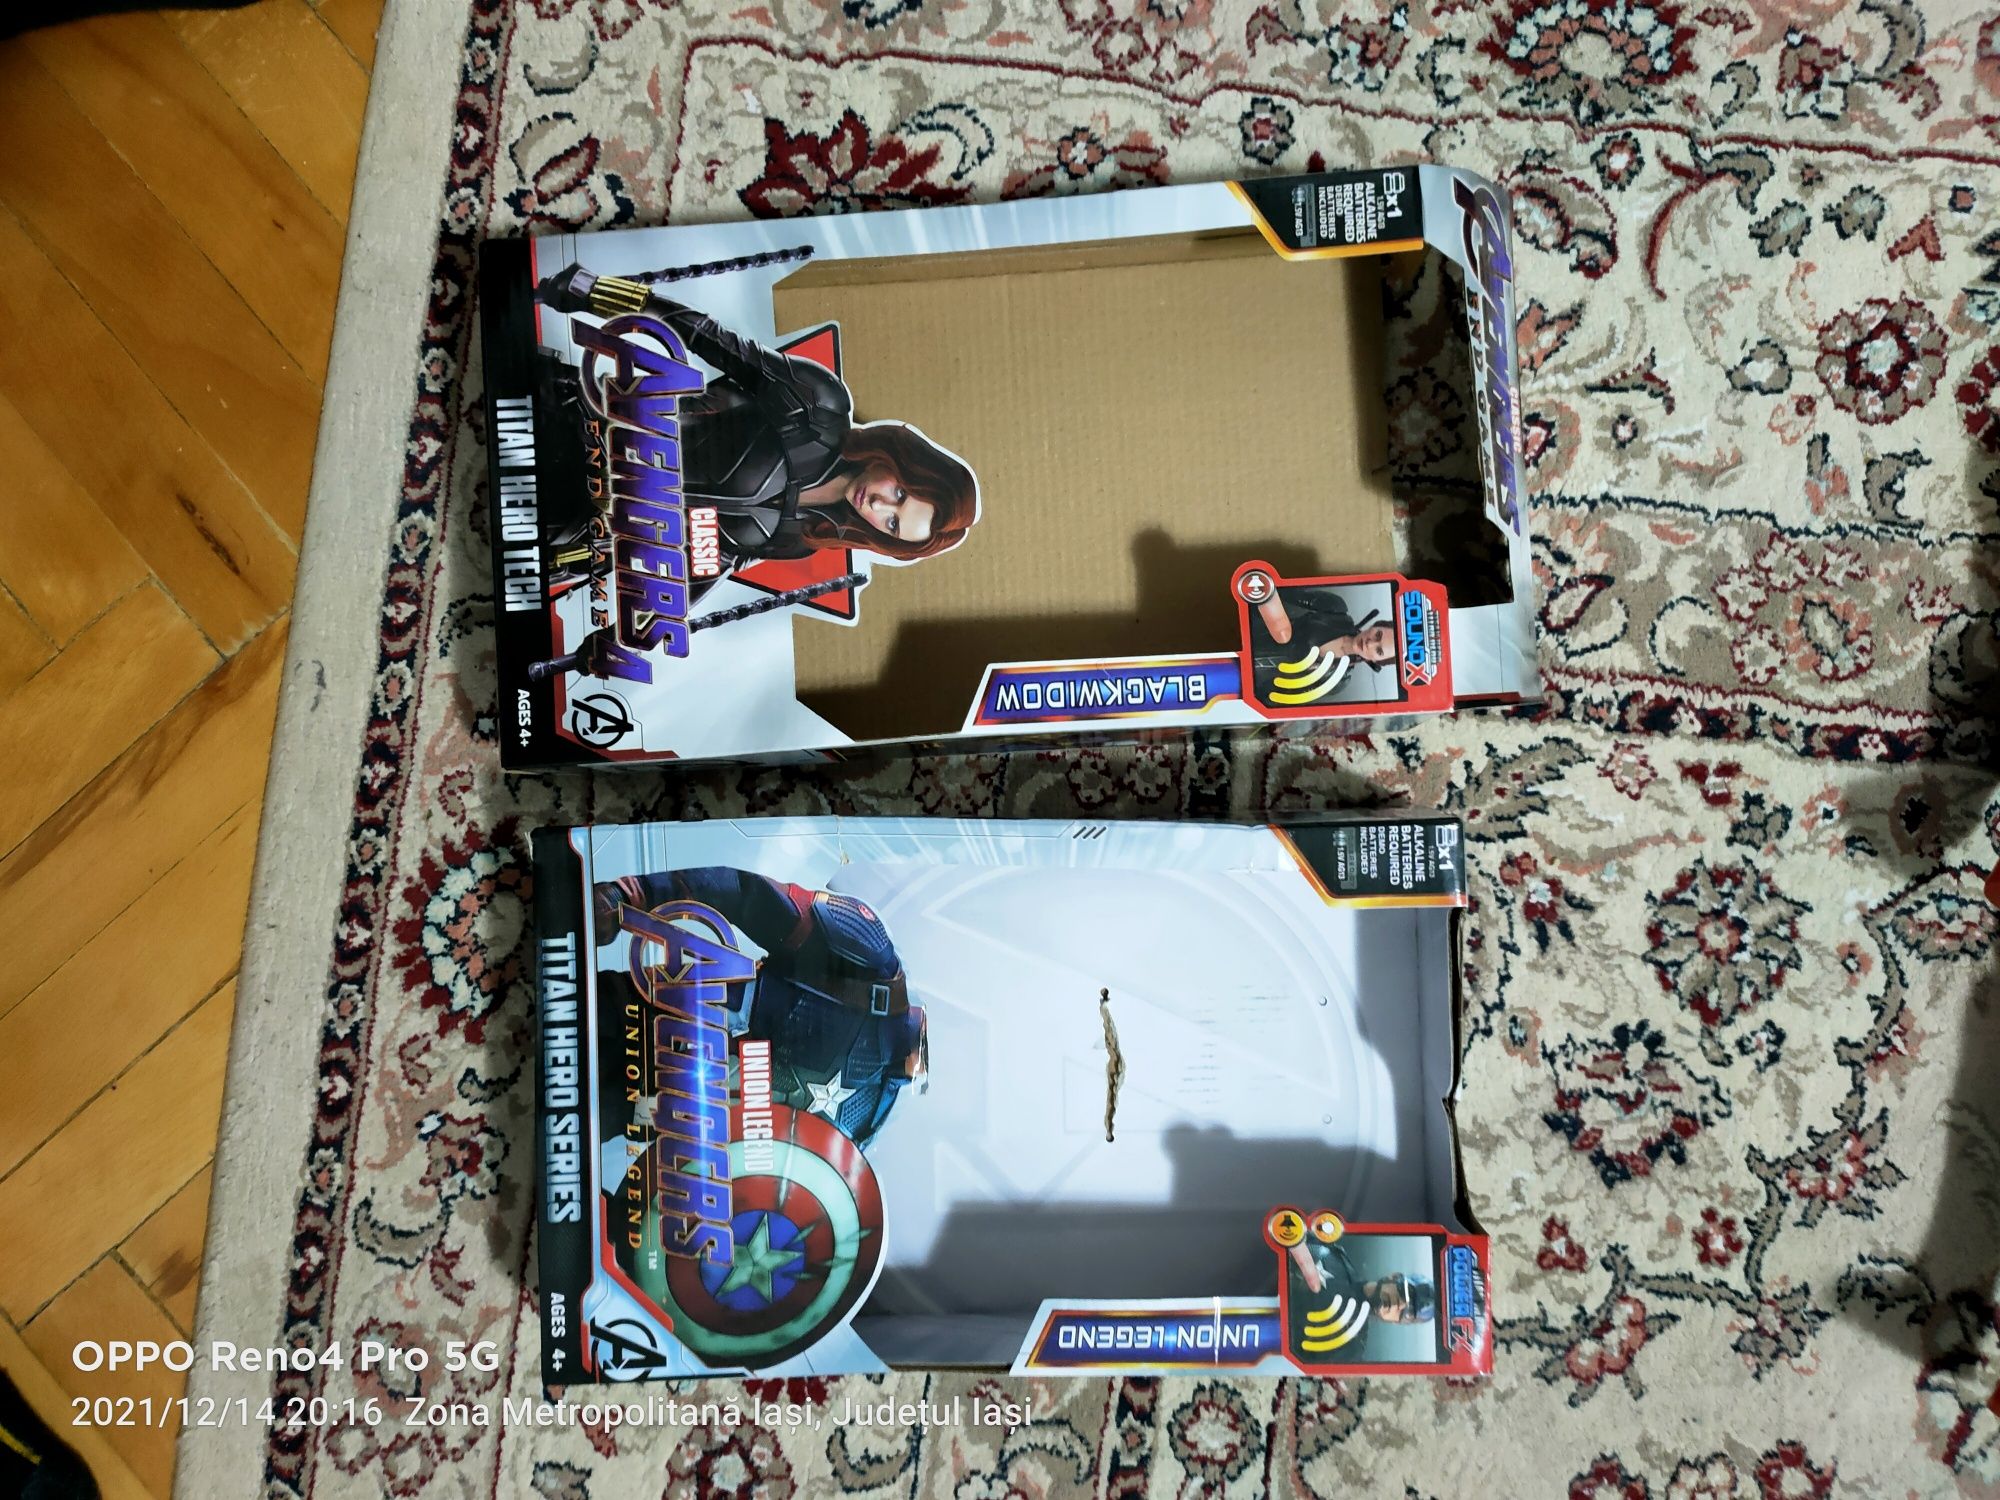 Figurine Marvel cu tot cu cutie